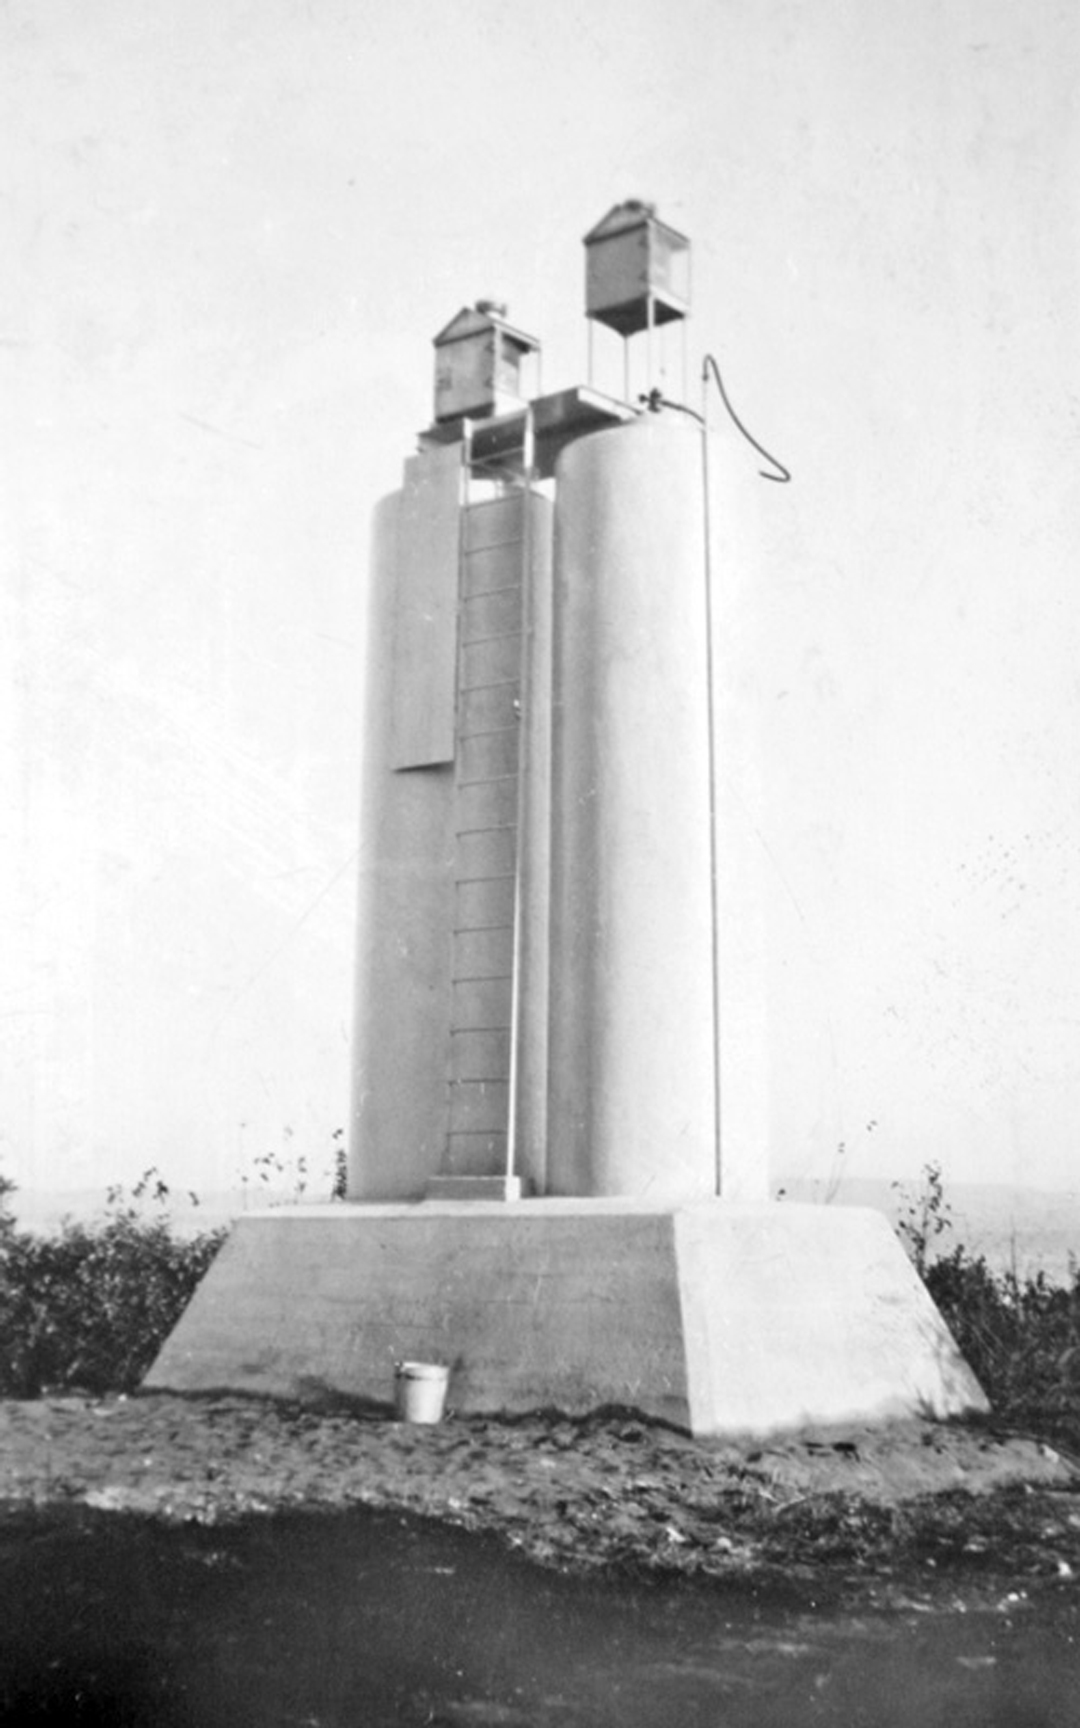 Les deux tours automatisées - Source : www.lighthousefriends.com, après 1935